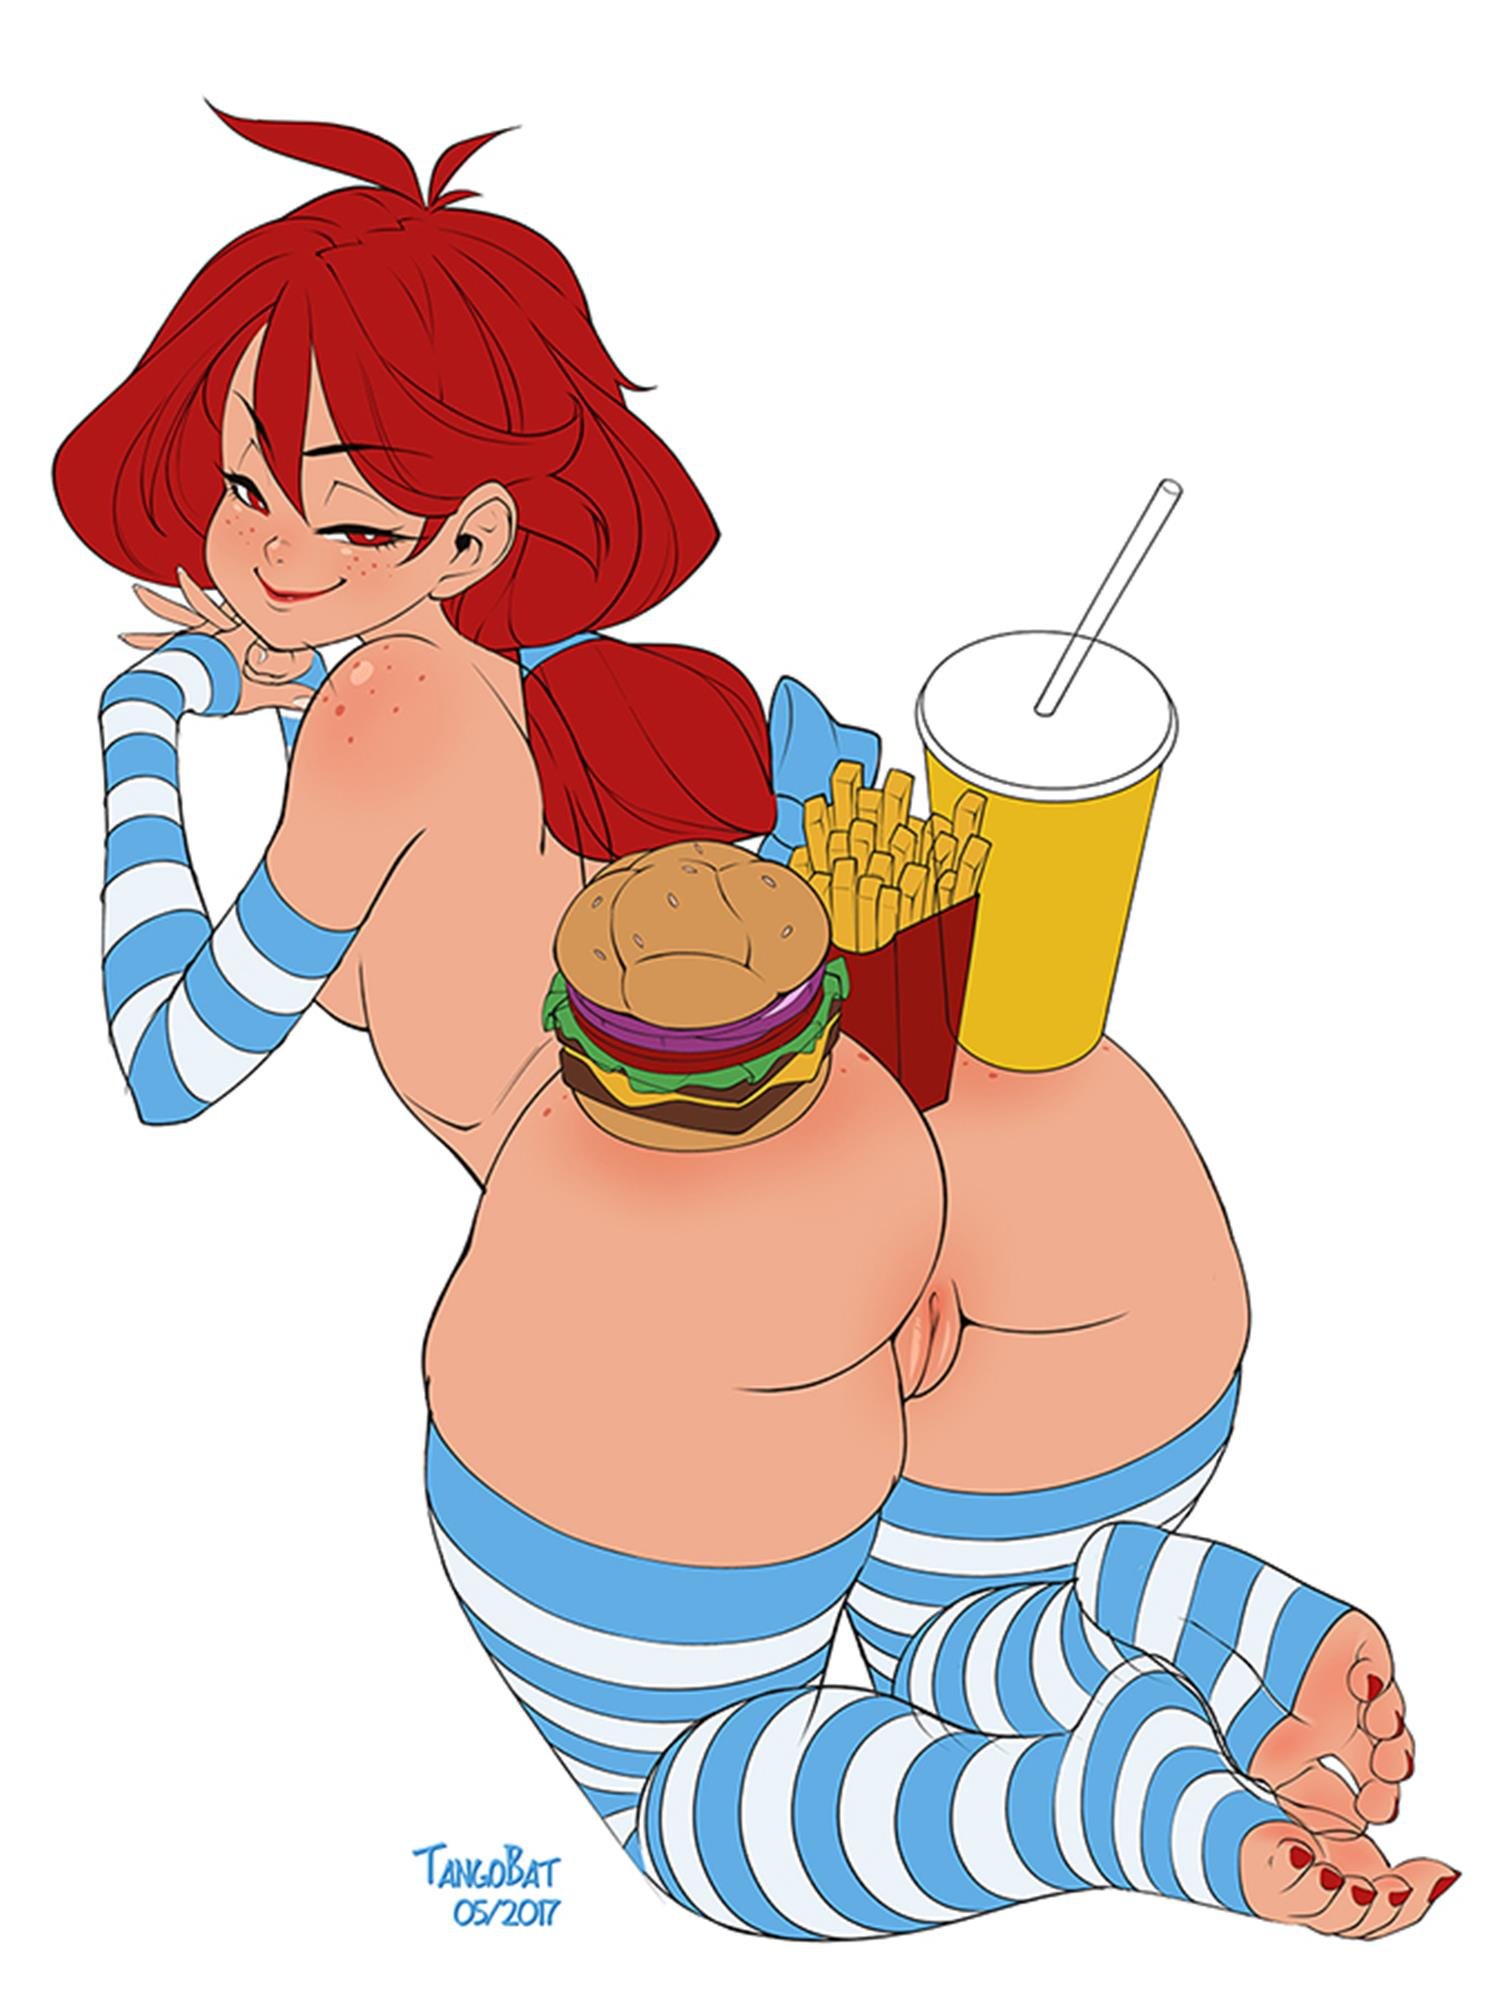 Wendy's Mascot Porn